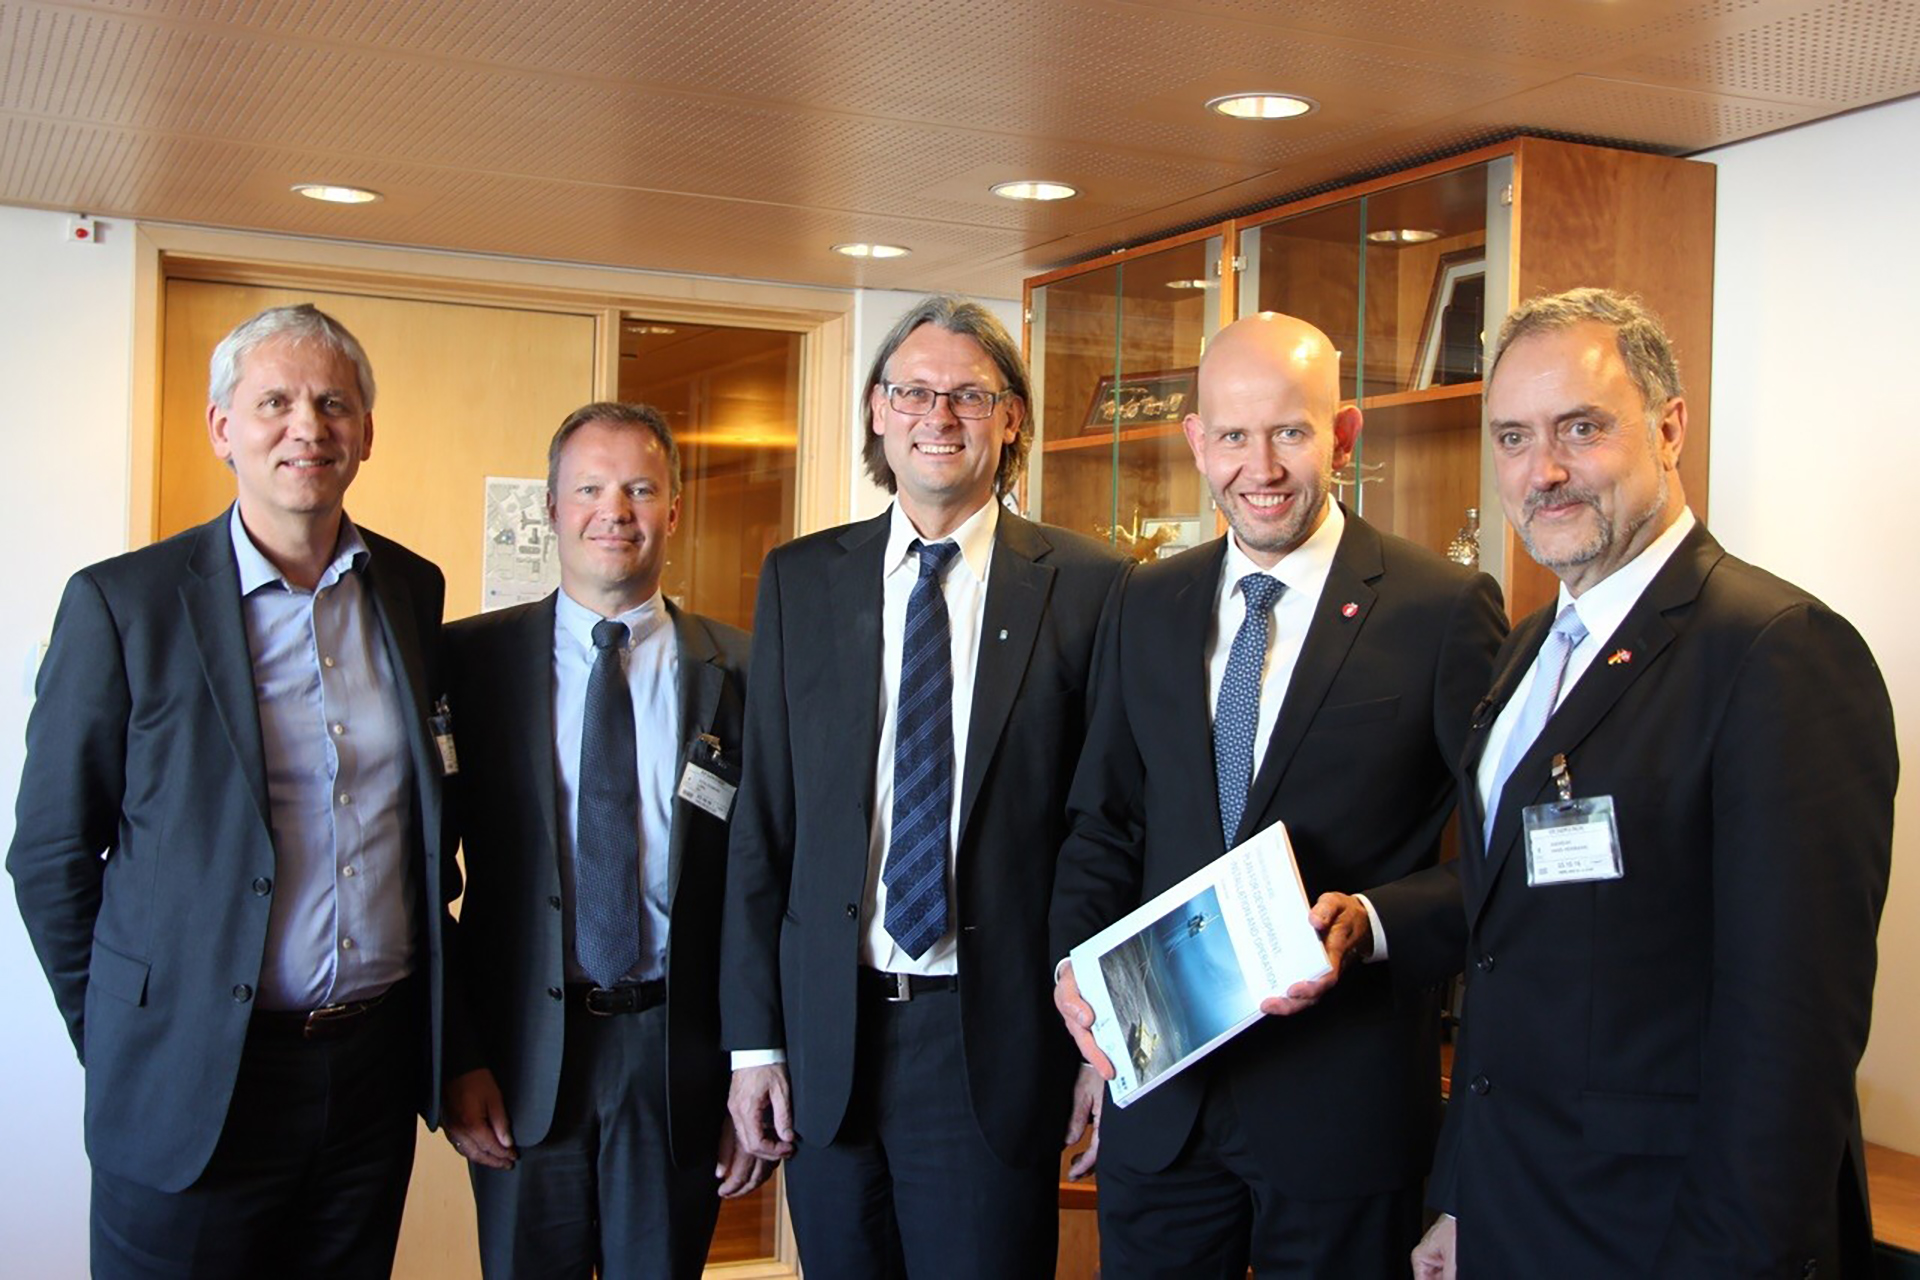 Fra venstre: Jon Sandnes, Lars Stoltenberg, Lars Moe, Tord Lien, Hans-Hermann Andreae Foto: OED